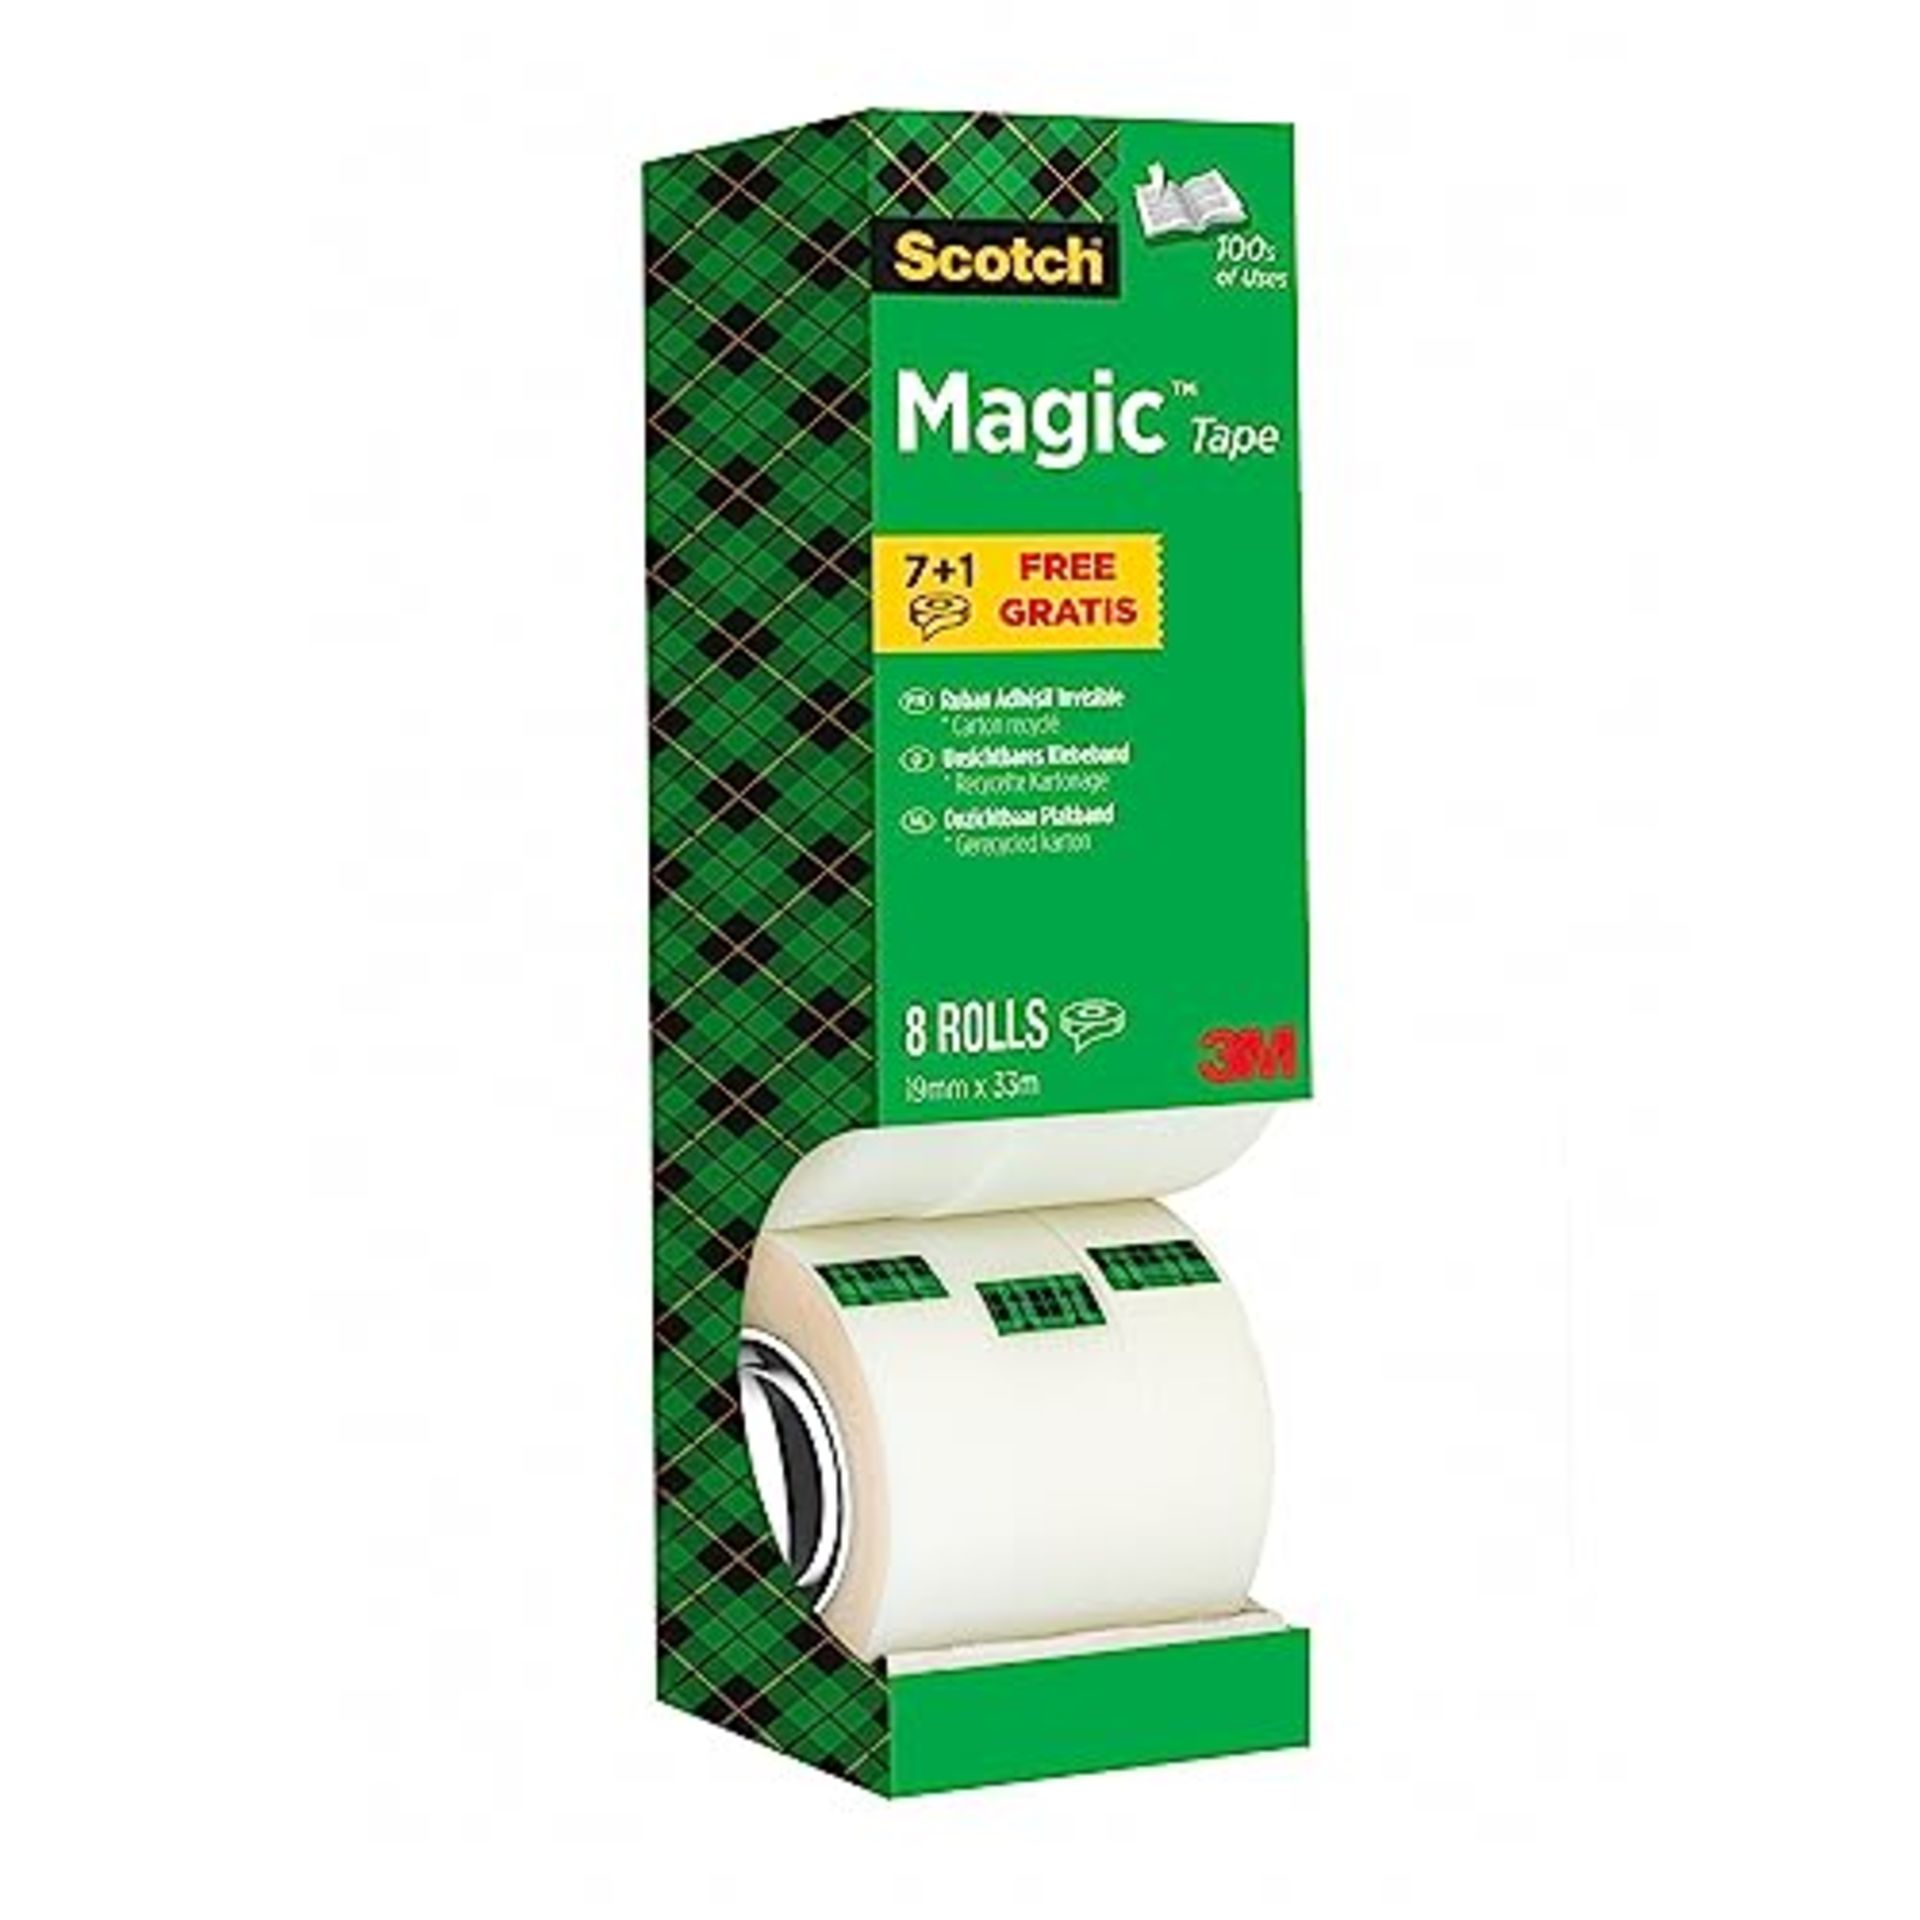 Scotch Magic Tape, Value Pack, 8 Rolls , 19 mm x 33 m - General Purpose Sticky Tape fo